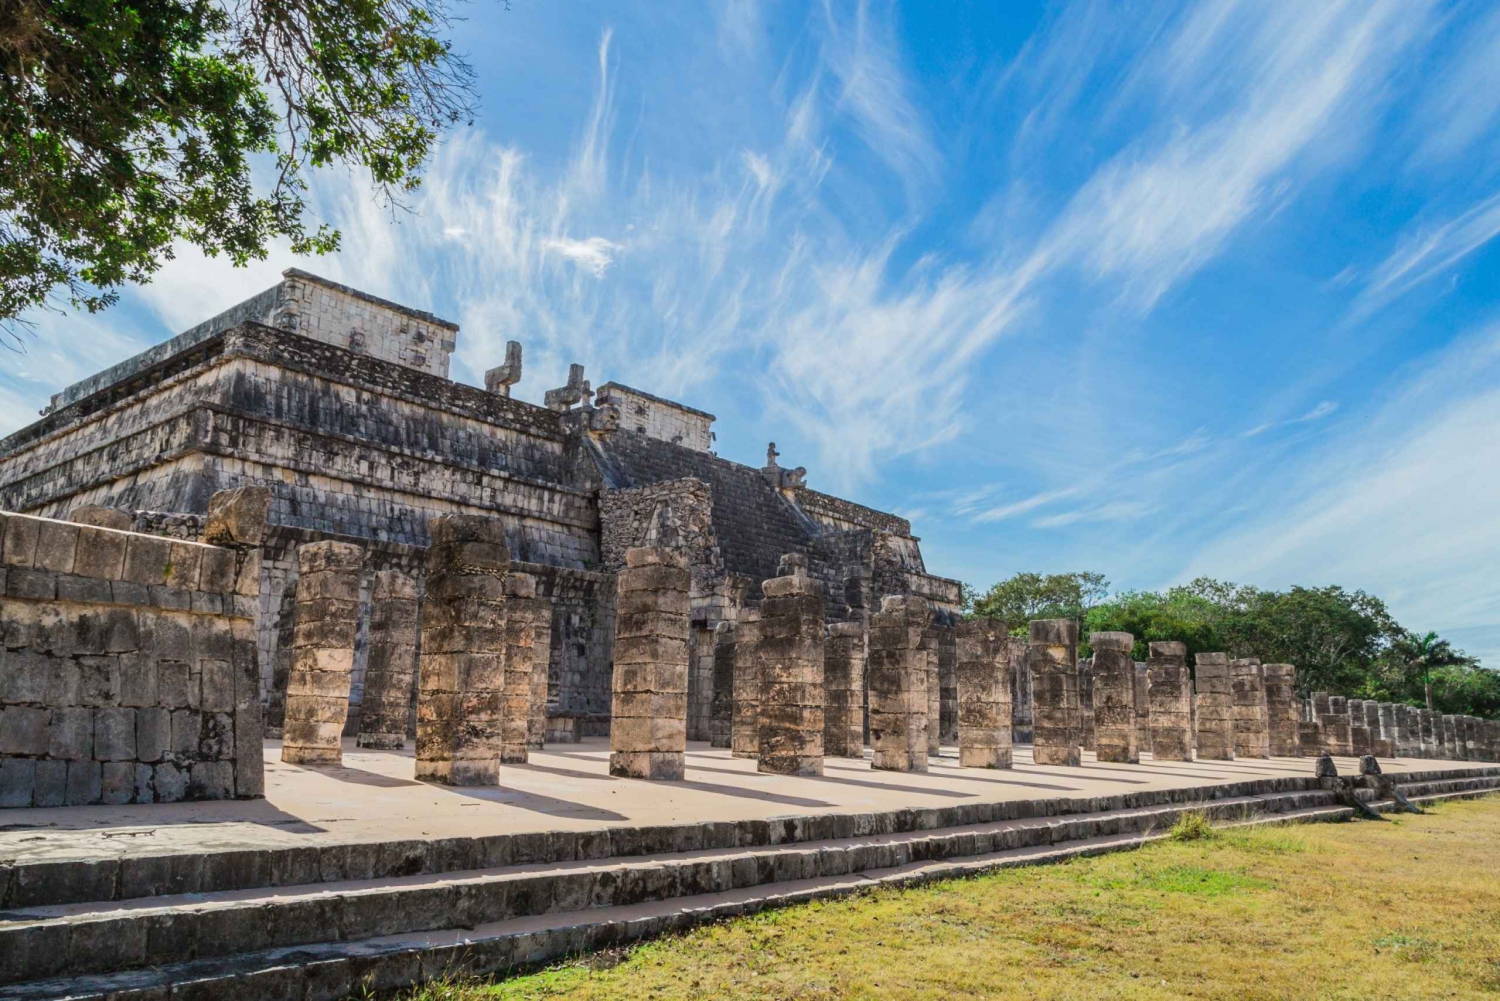 Yucatán: Chichén Itzá Self-Guided Walking Tour with GPS